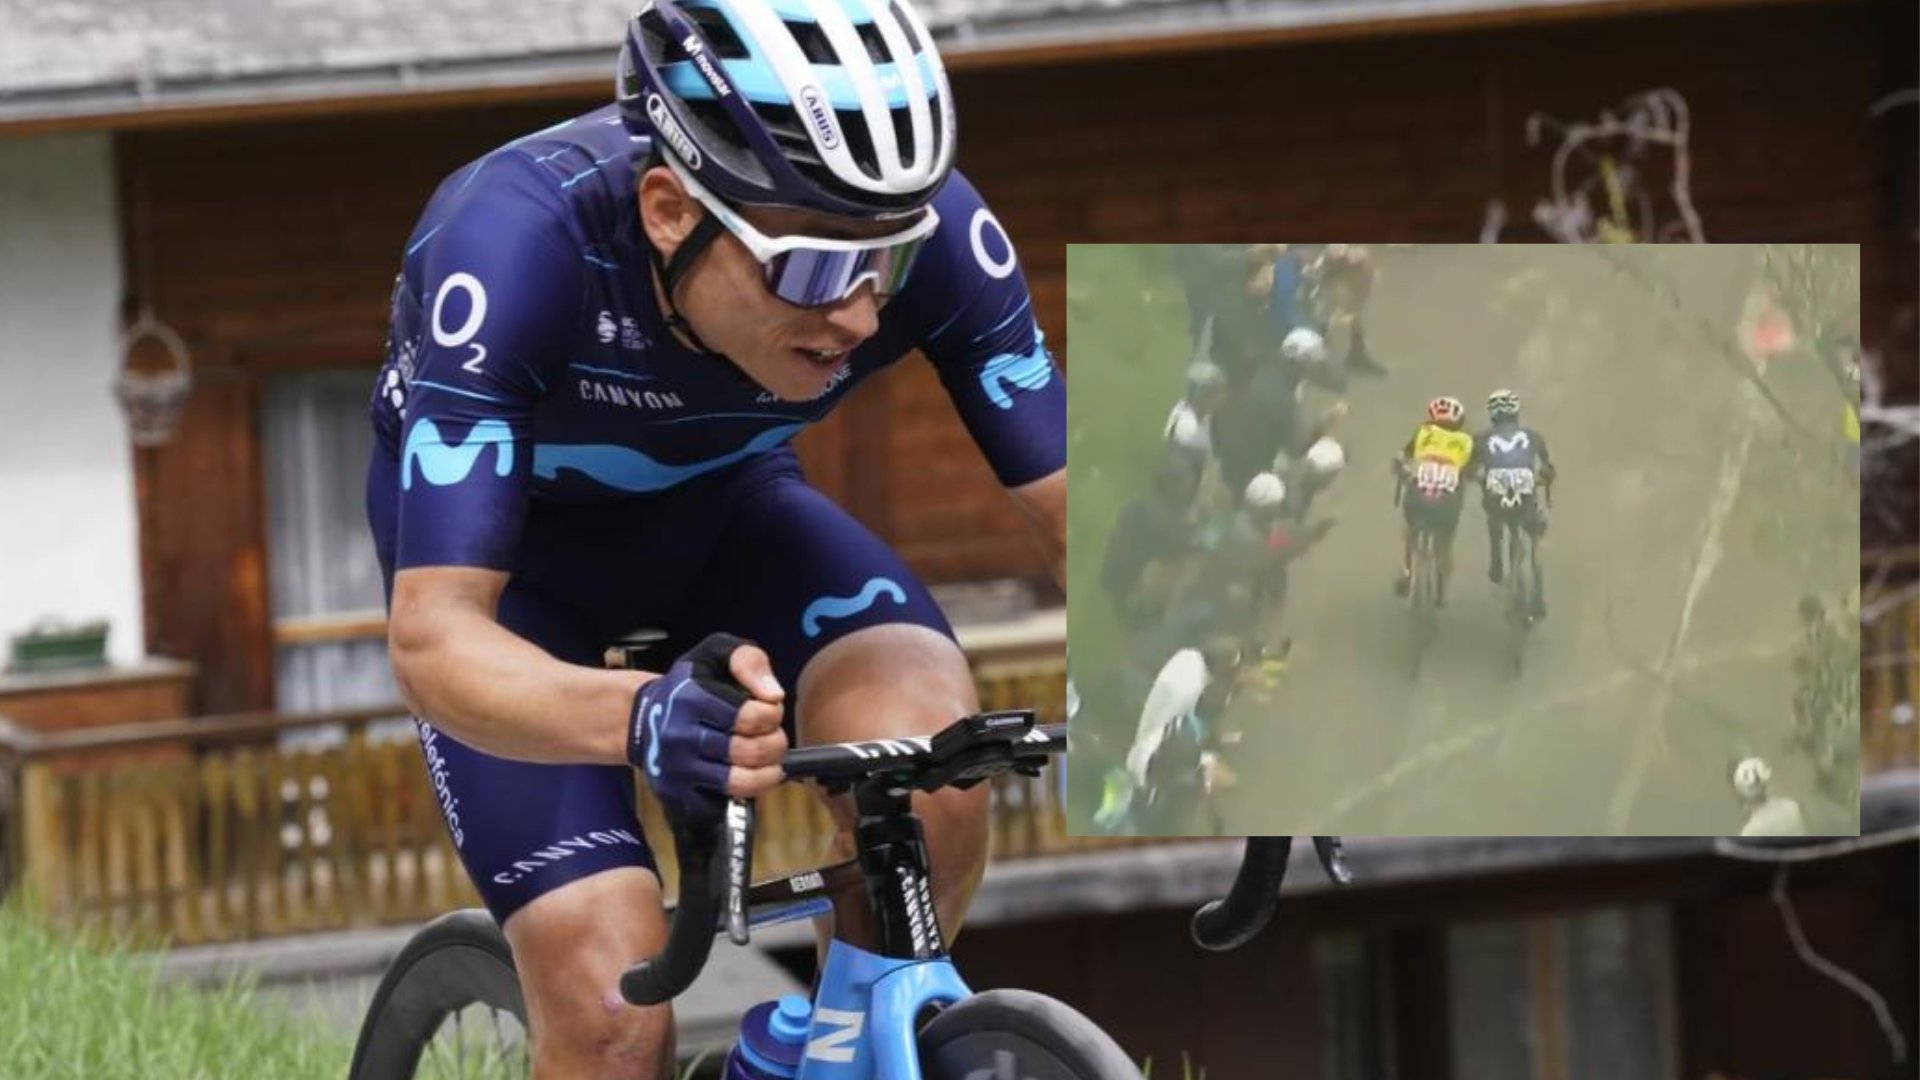 La UCI sancionó a Einer Rubio tras un empujón a un rival en el Giro de Italia